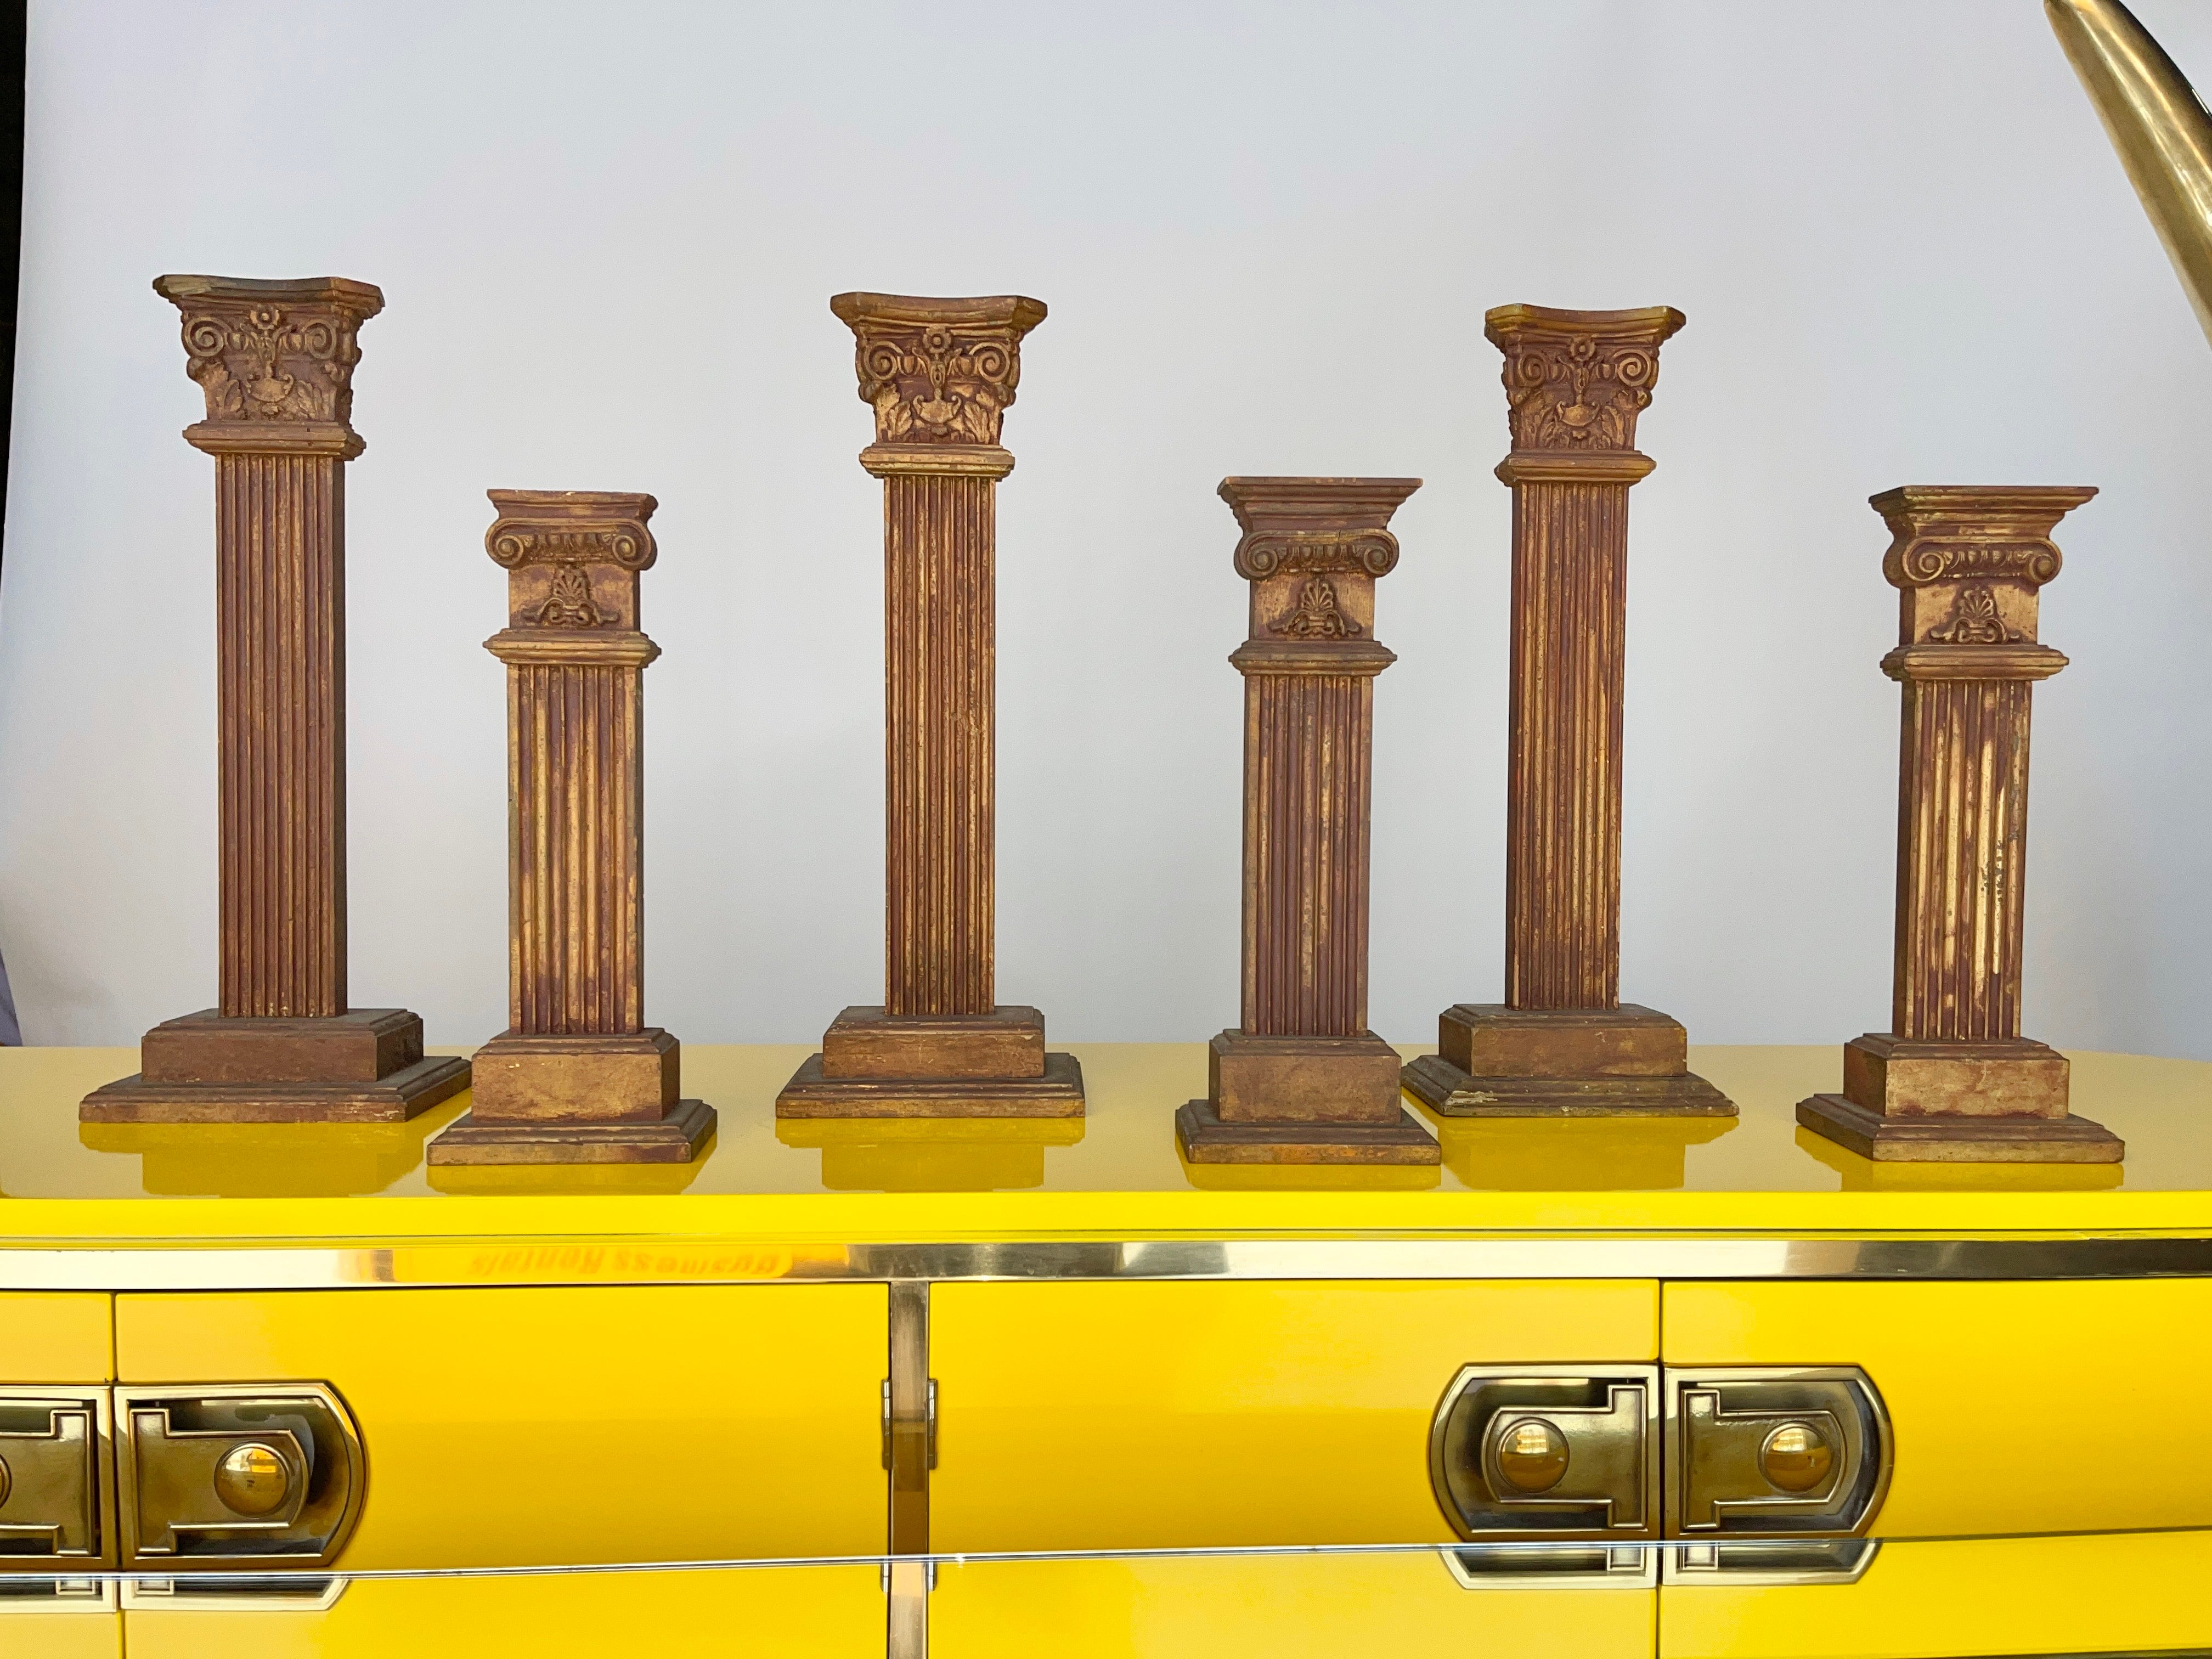 Ensemble de six colonnes décoratives ioniques et corinthiennes en bois sculpté et rehaussé de feuilles de couleur bronze.
Ces objets ont été utilisés comme accessoires de présentation pour le merchandising chez le légendaire bijoutier de Boston,